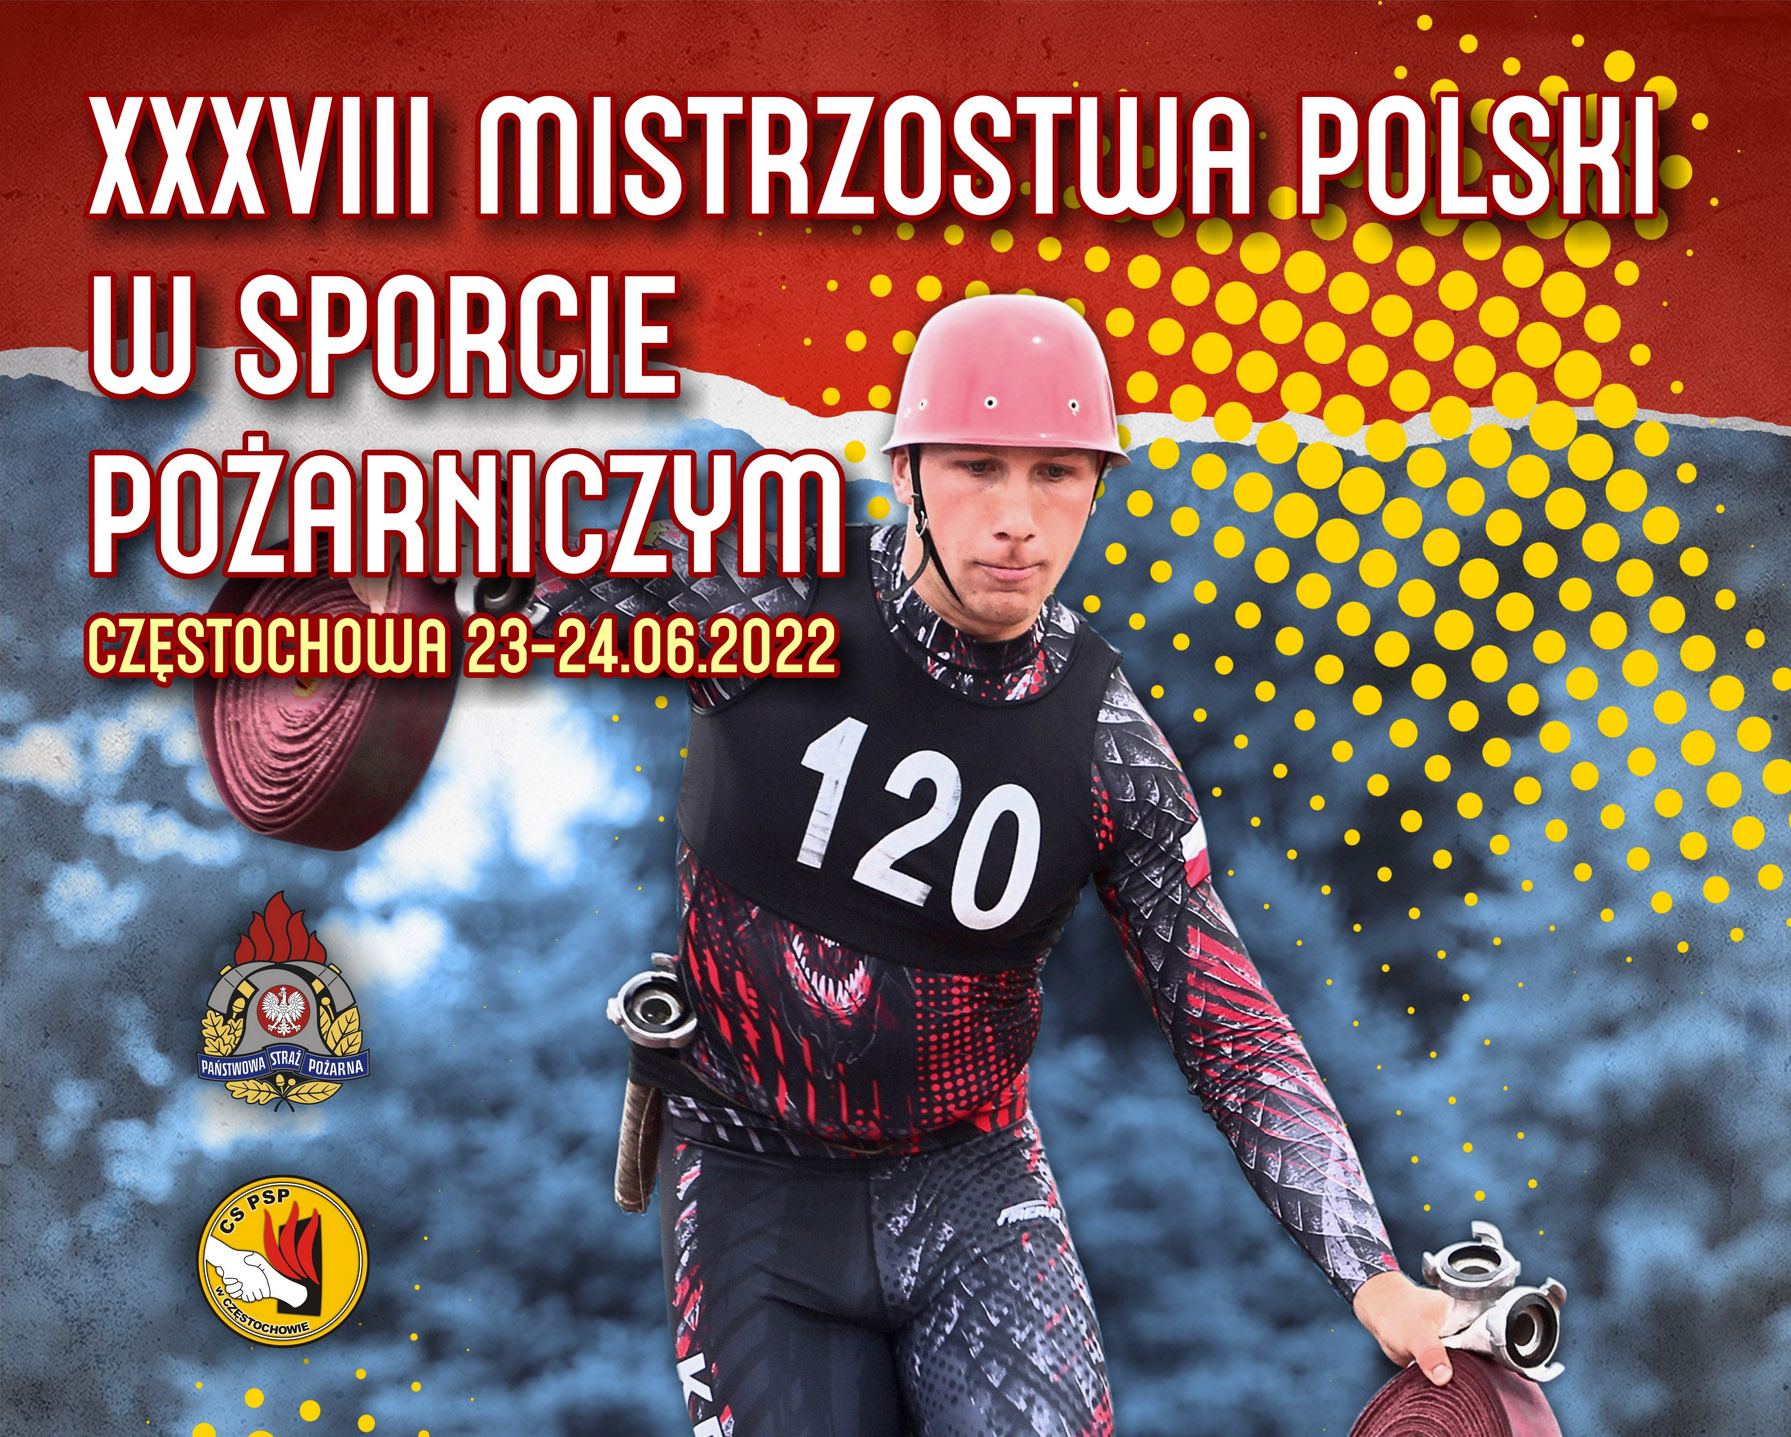 XXXVIII Mistrzostwa Polski w sporcie pożarniczym. 23-24 czerwiec 2022 r.